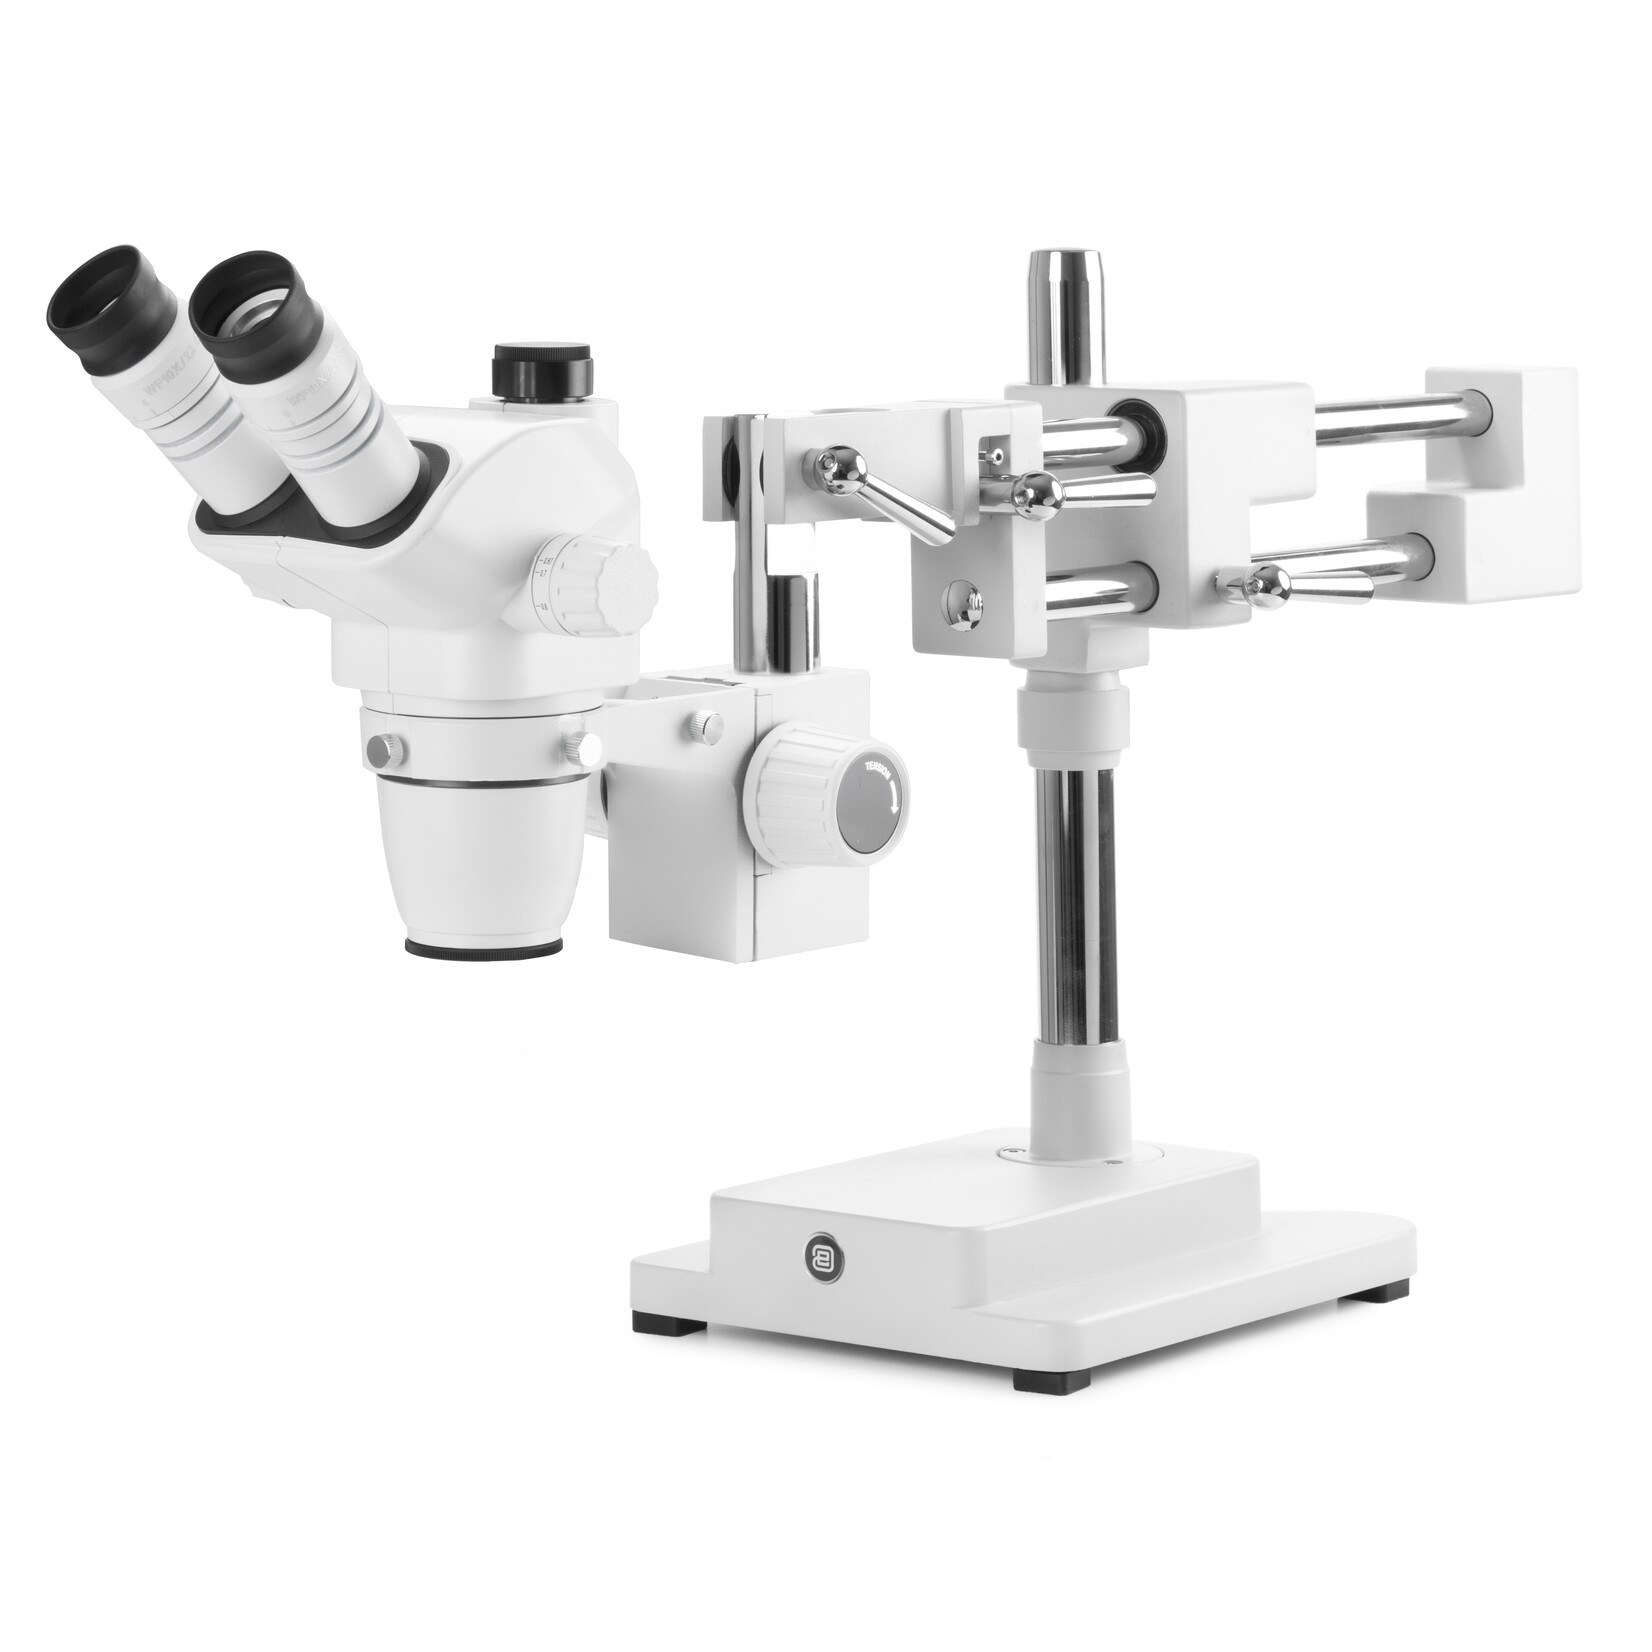 Microscópio trinocular estéreo com zoom NexiusZoom EVO-DFS, objetiva com zoom de 0,65x a 5,5x, ampliação de 6,5x a 55x